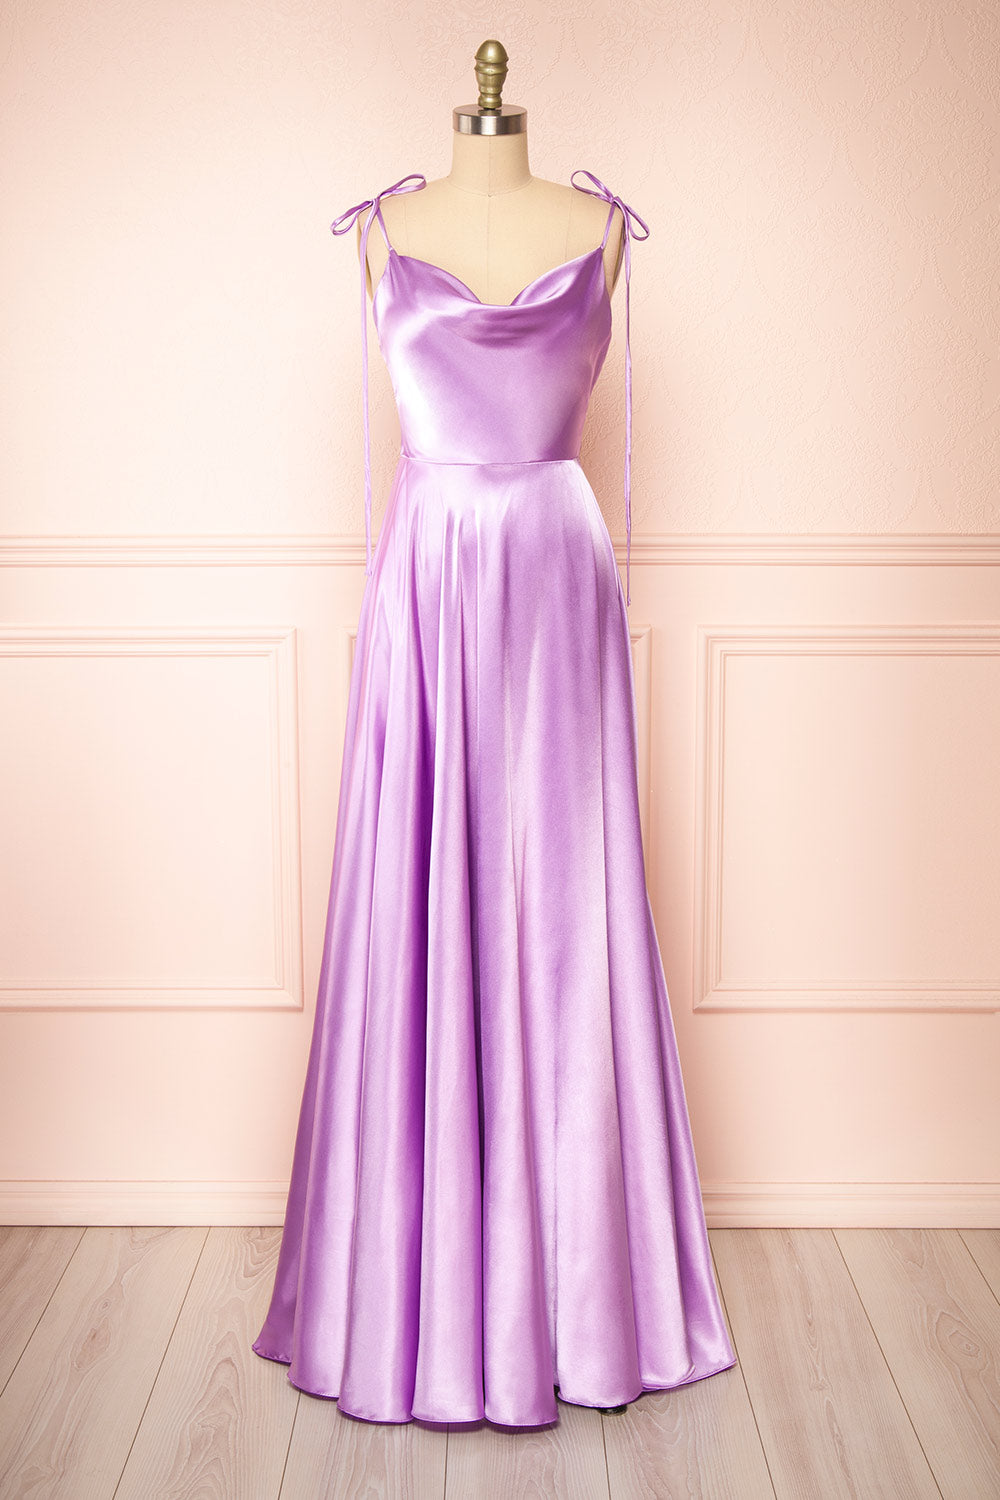 Lavender Dress - Cute Satin Dress - Lavender One-Shoulder Dress - Lulus